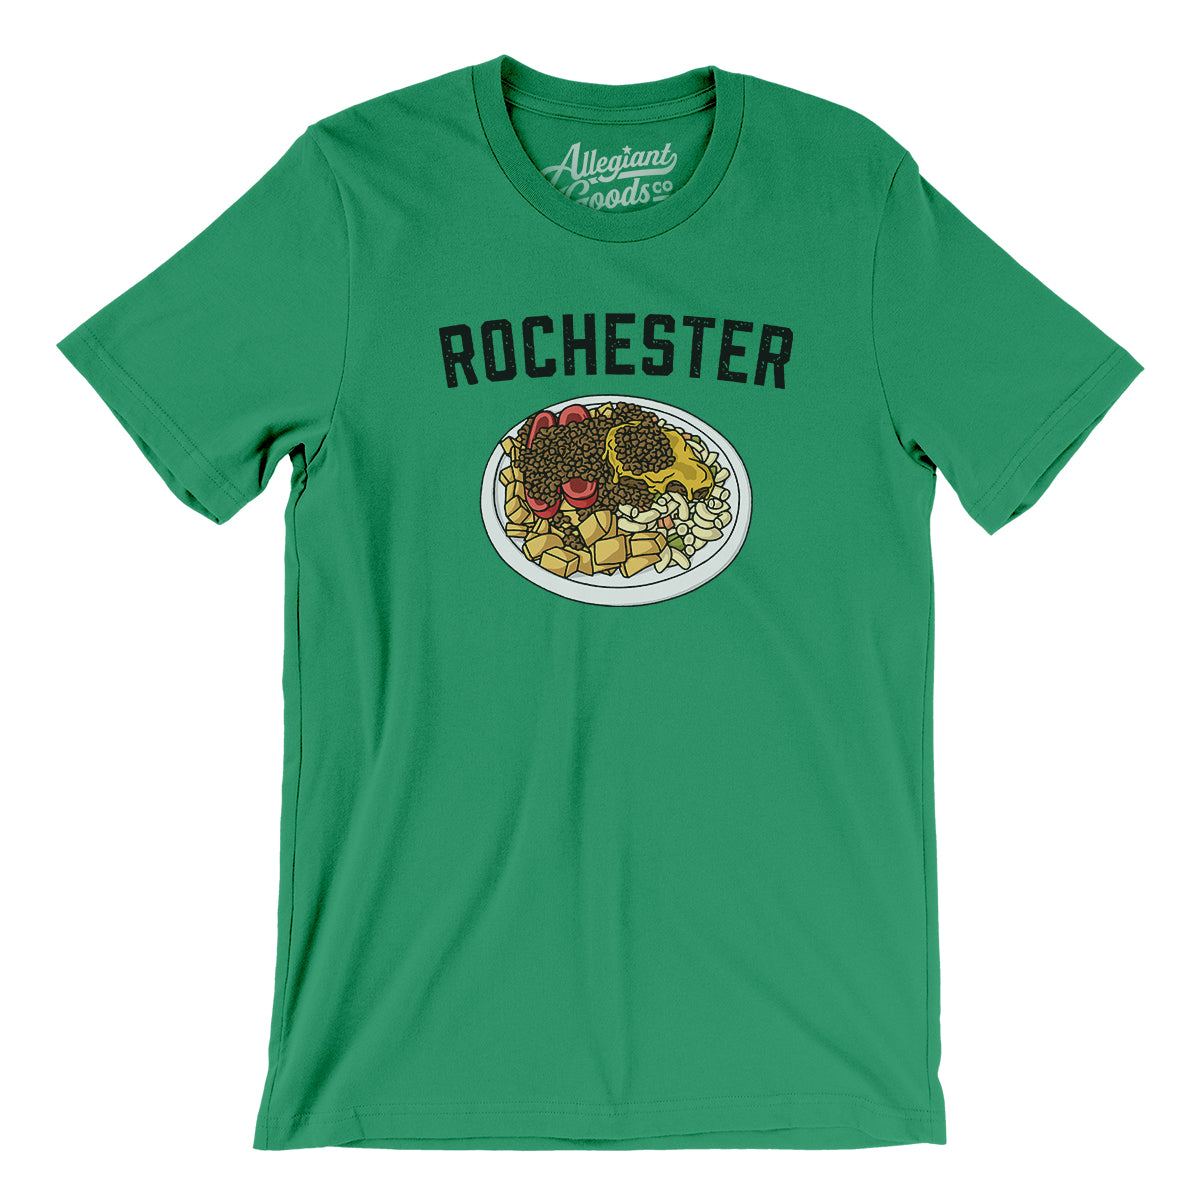 Rochester Garbage Plate Men/Unisex T-Shirt - Allegiant Goods Co.